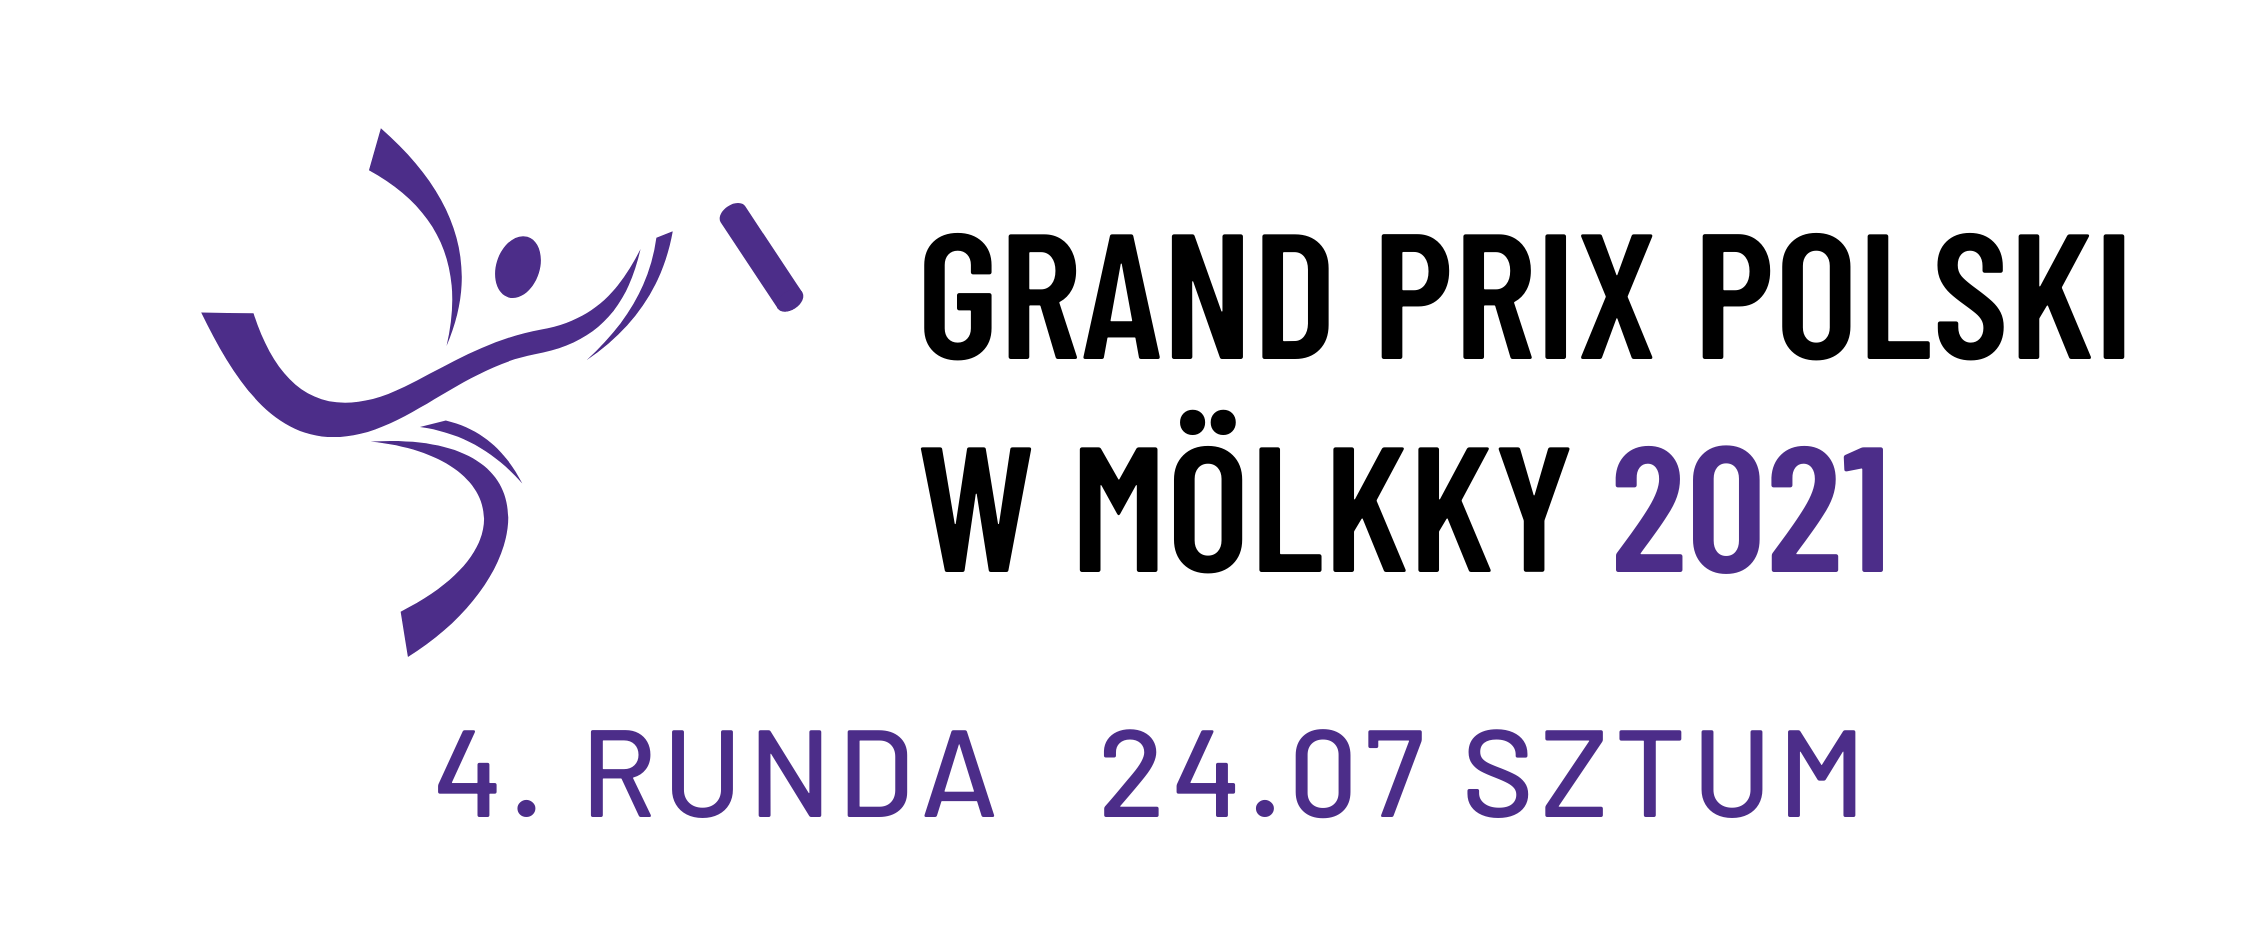 Grand Prix Polski w Mölkky 2021 - Event 4/5